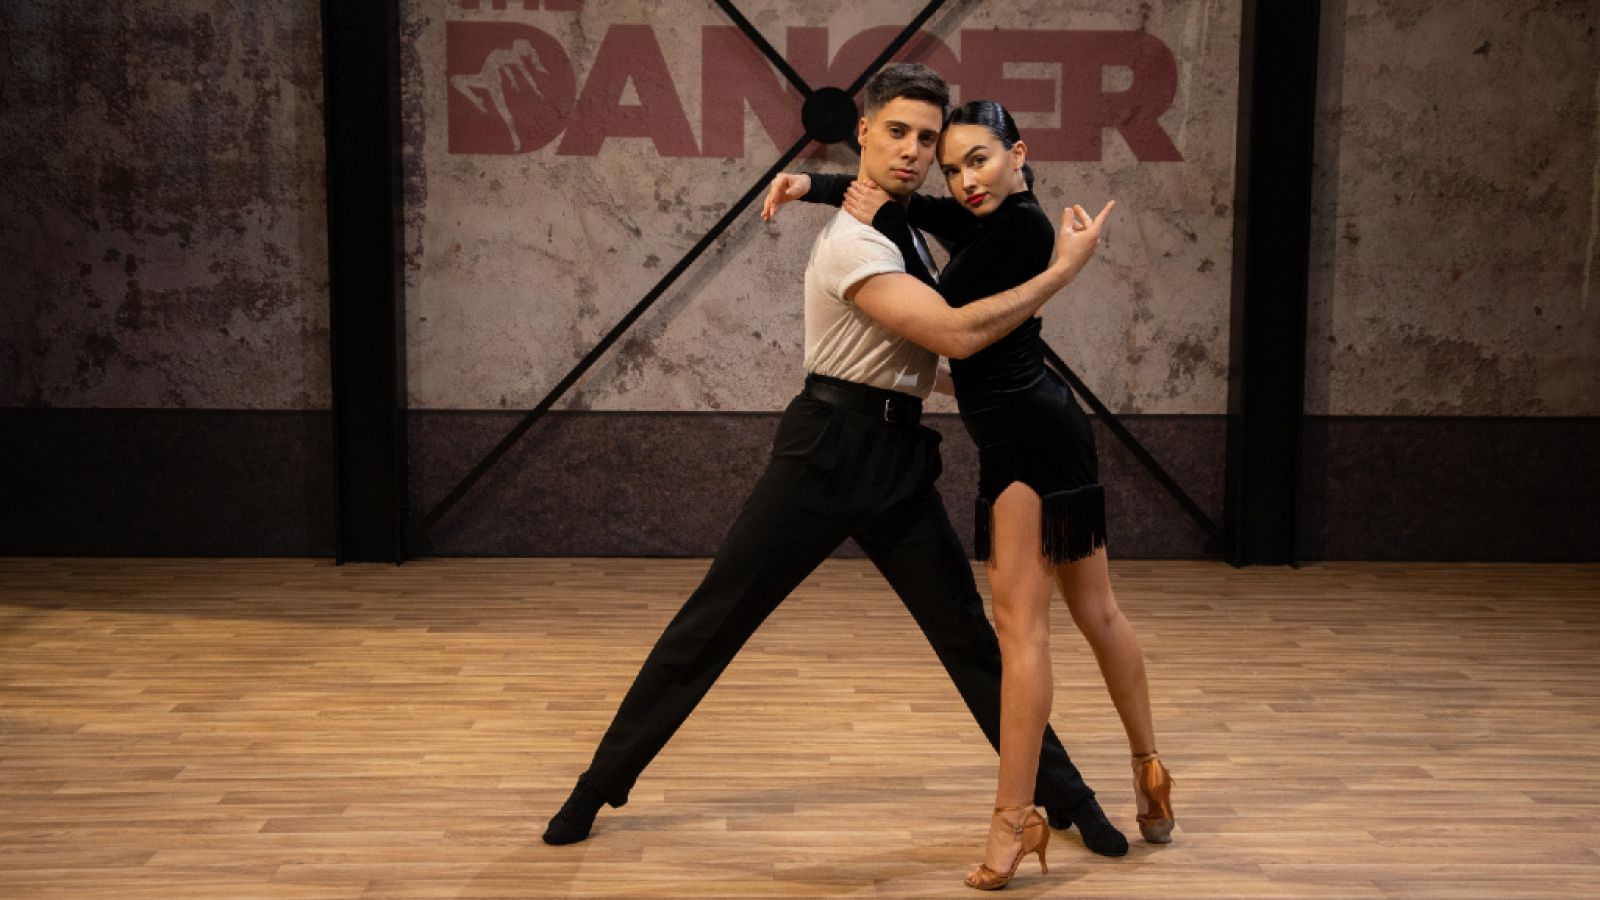 The Dancer - Alegato y actuación de Aleix&Sara